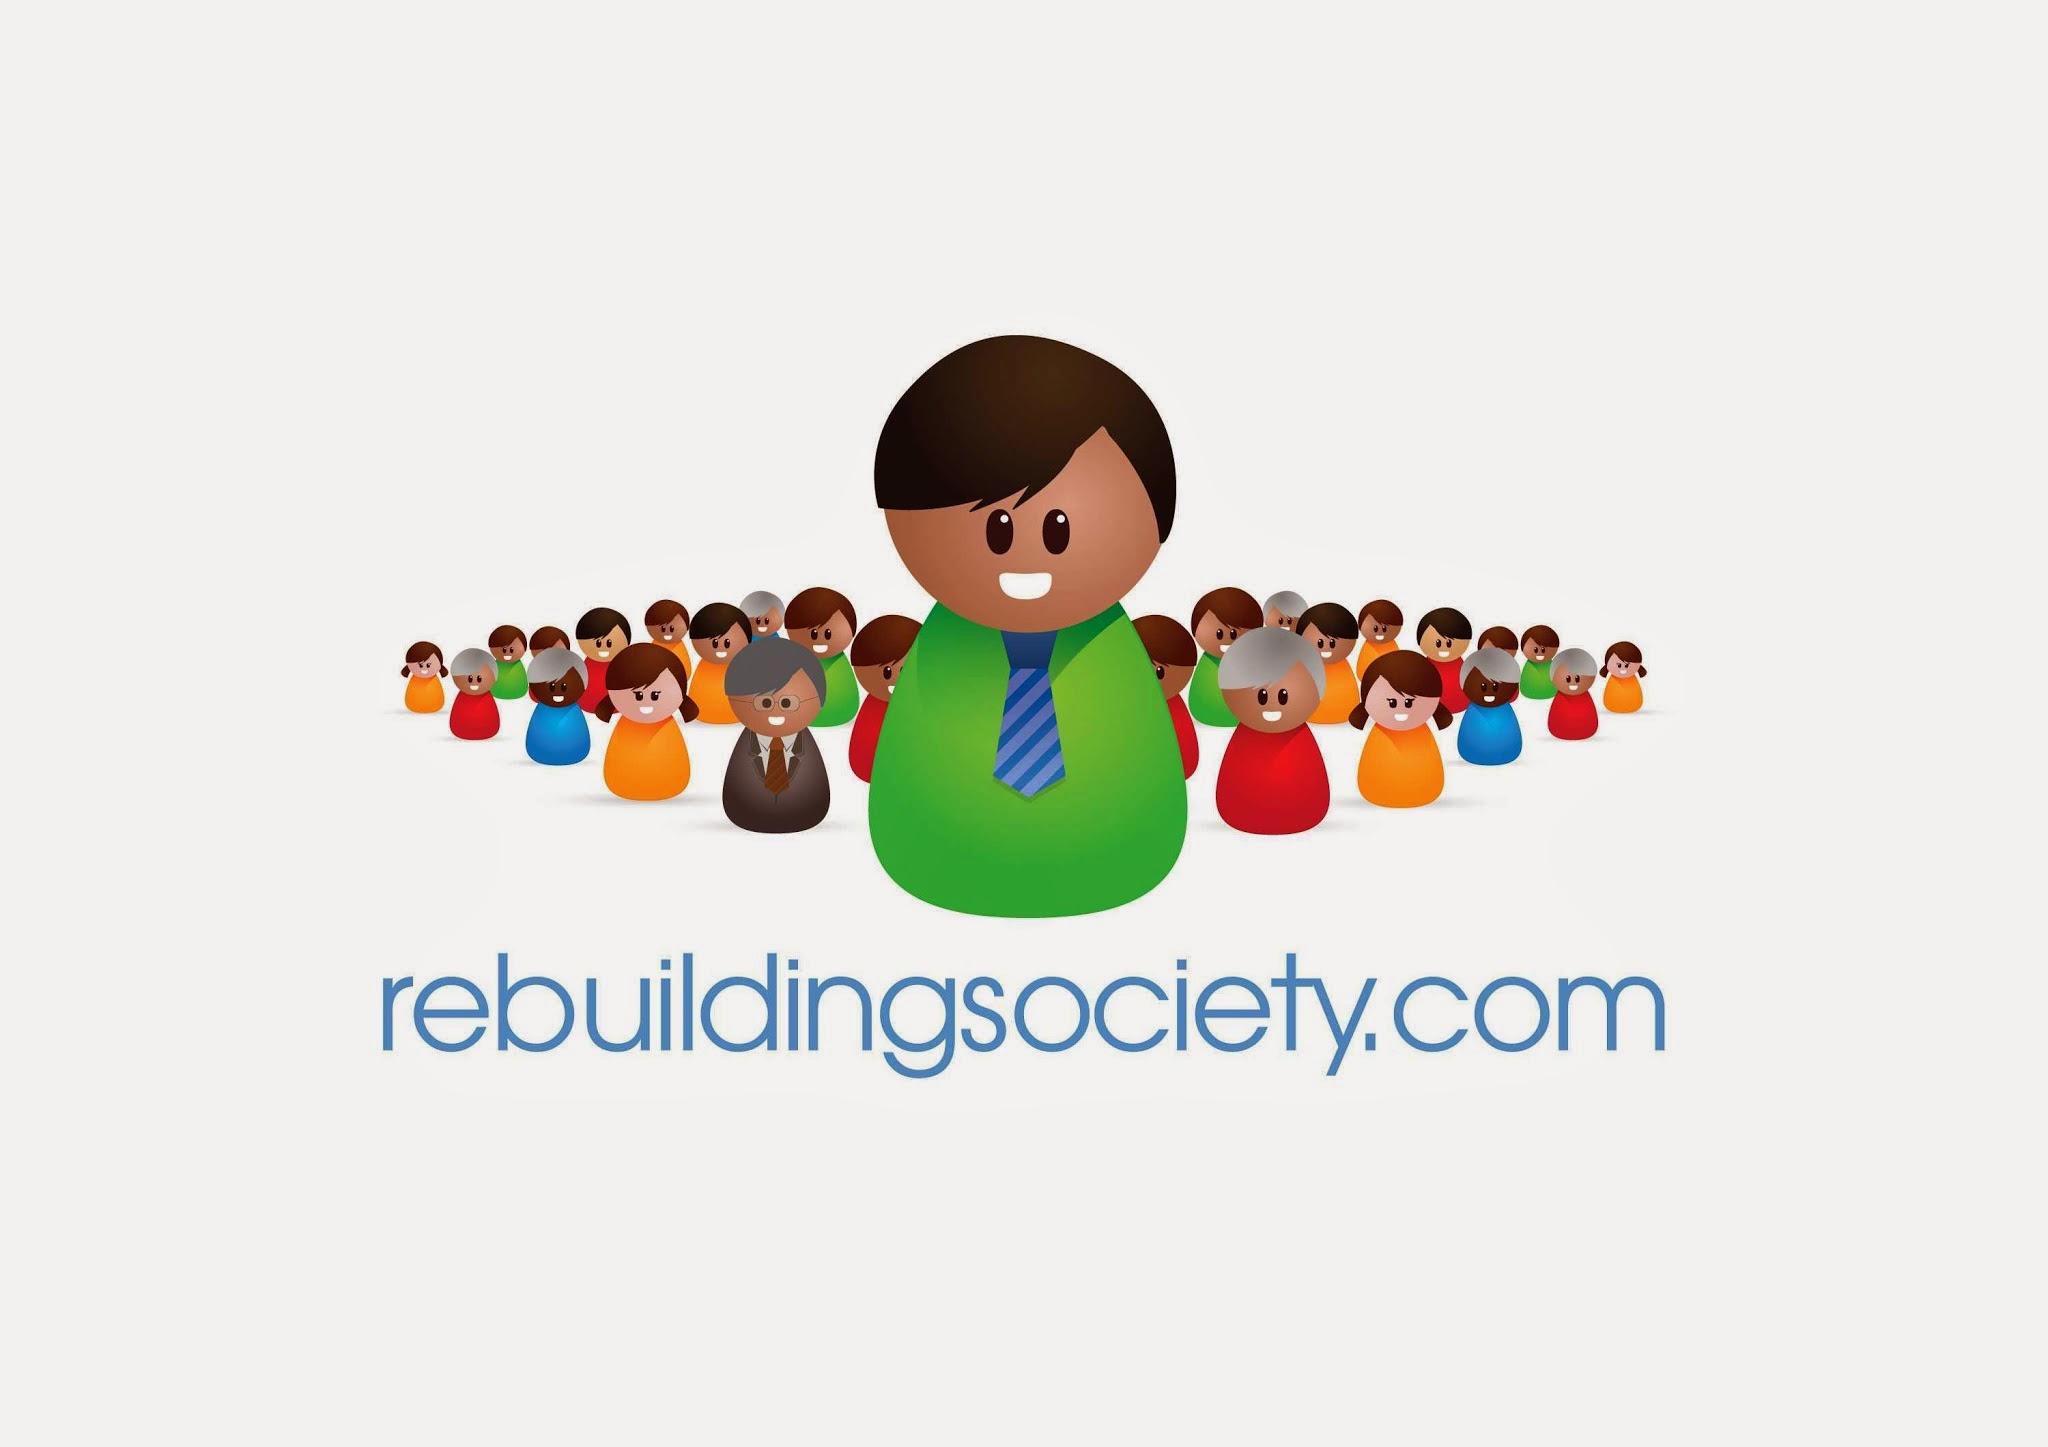 rebuildingsociety.com 02